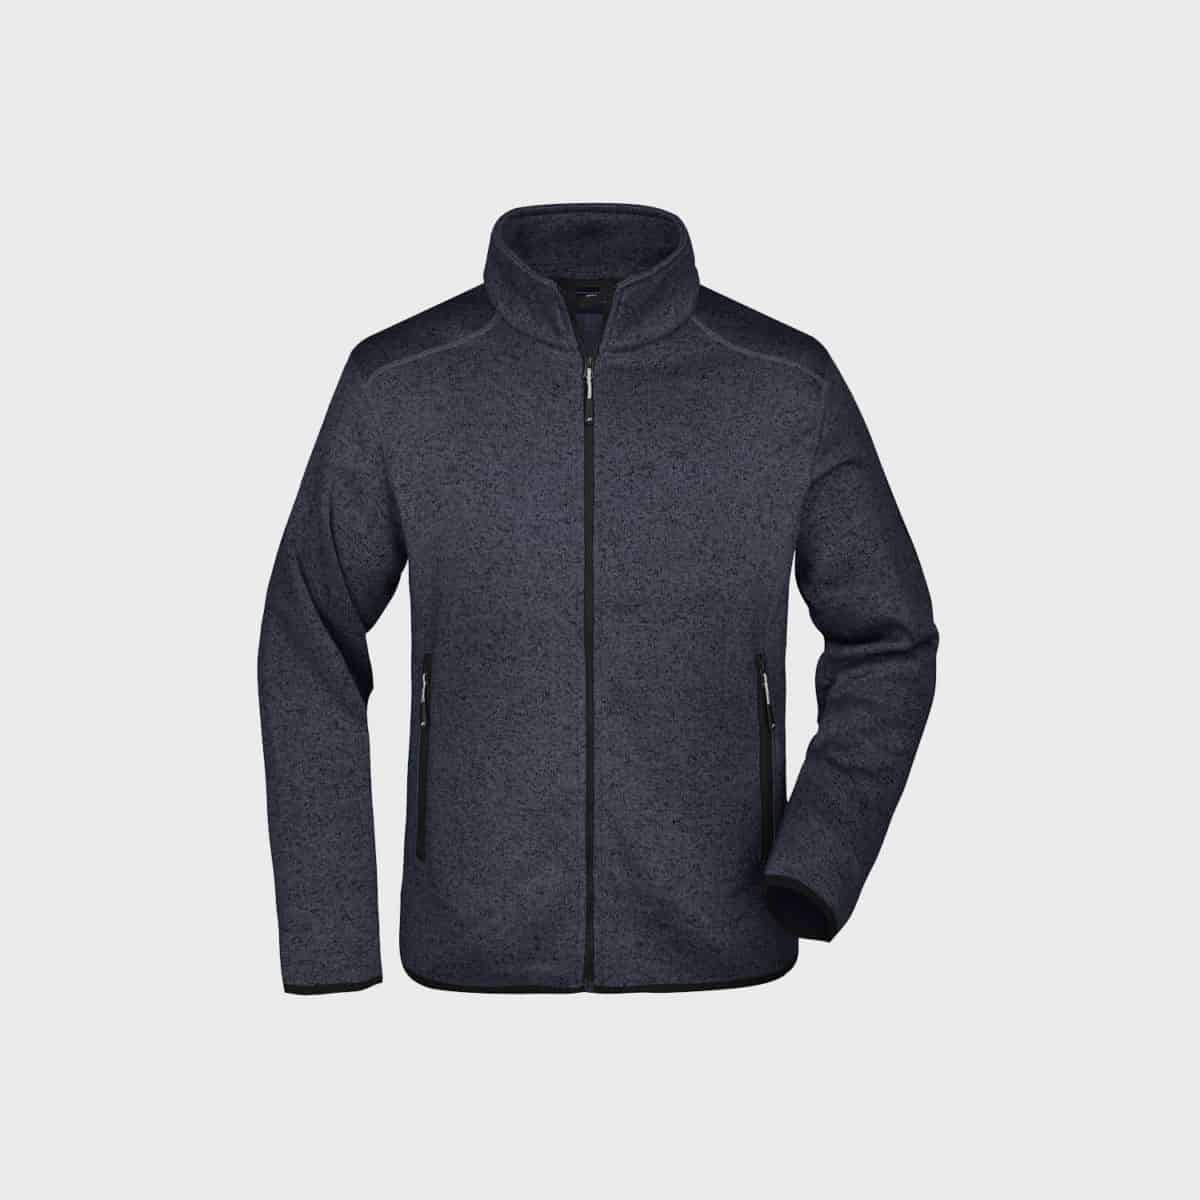 maglia-giacca-pile-uomo-grigio scuro-acquista-ricamo-ricamato-produzione